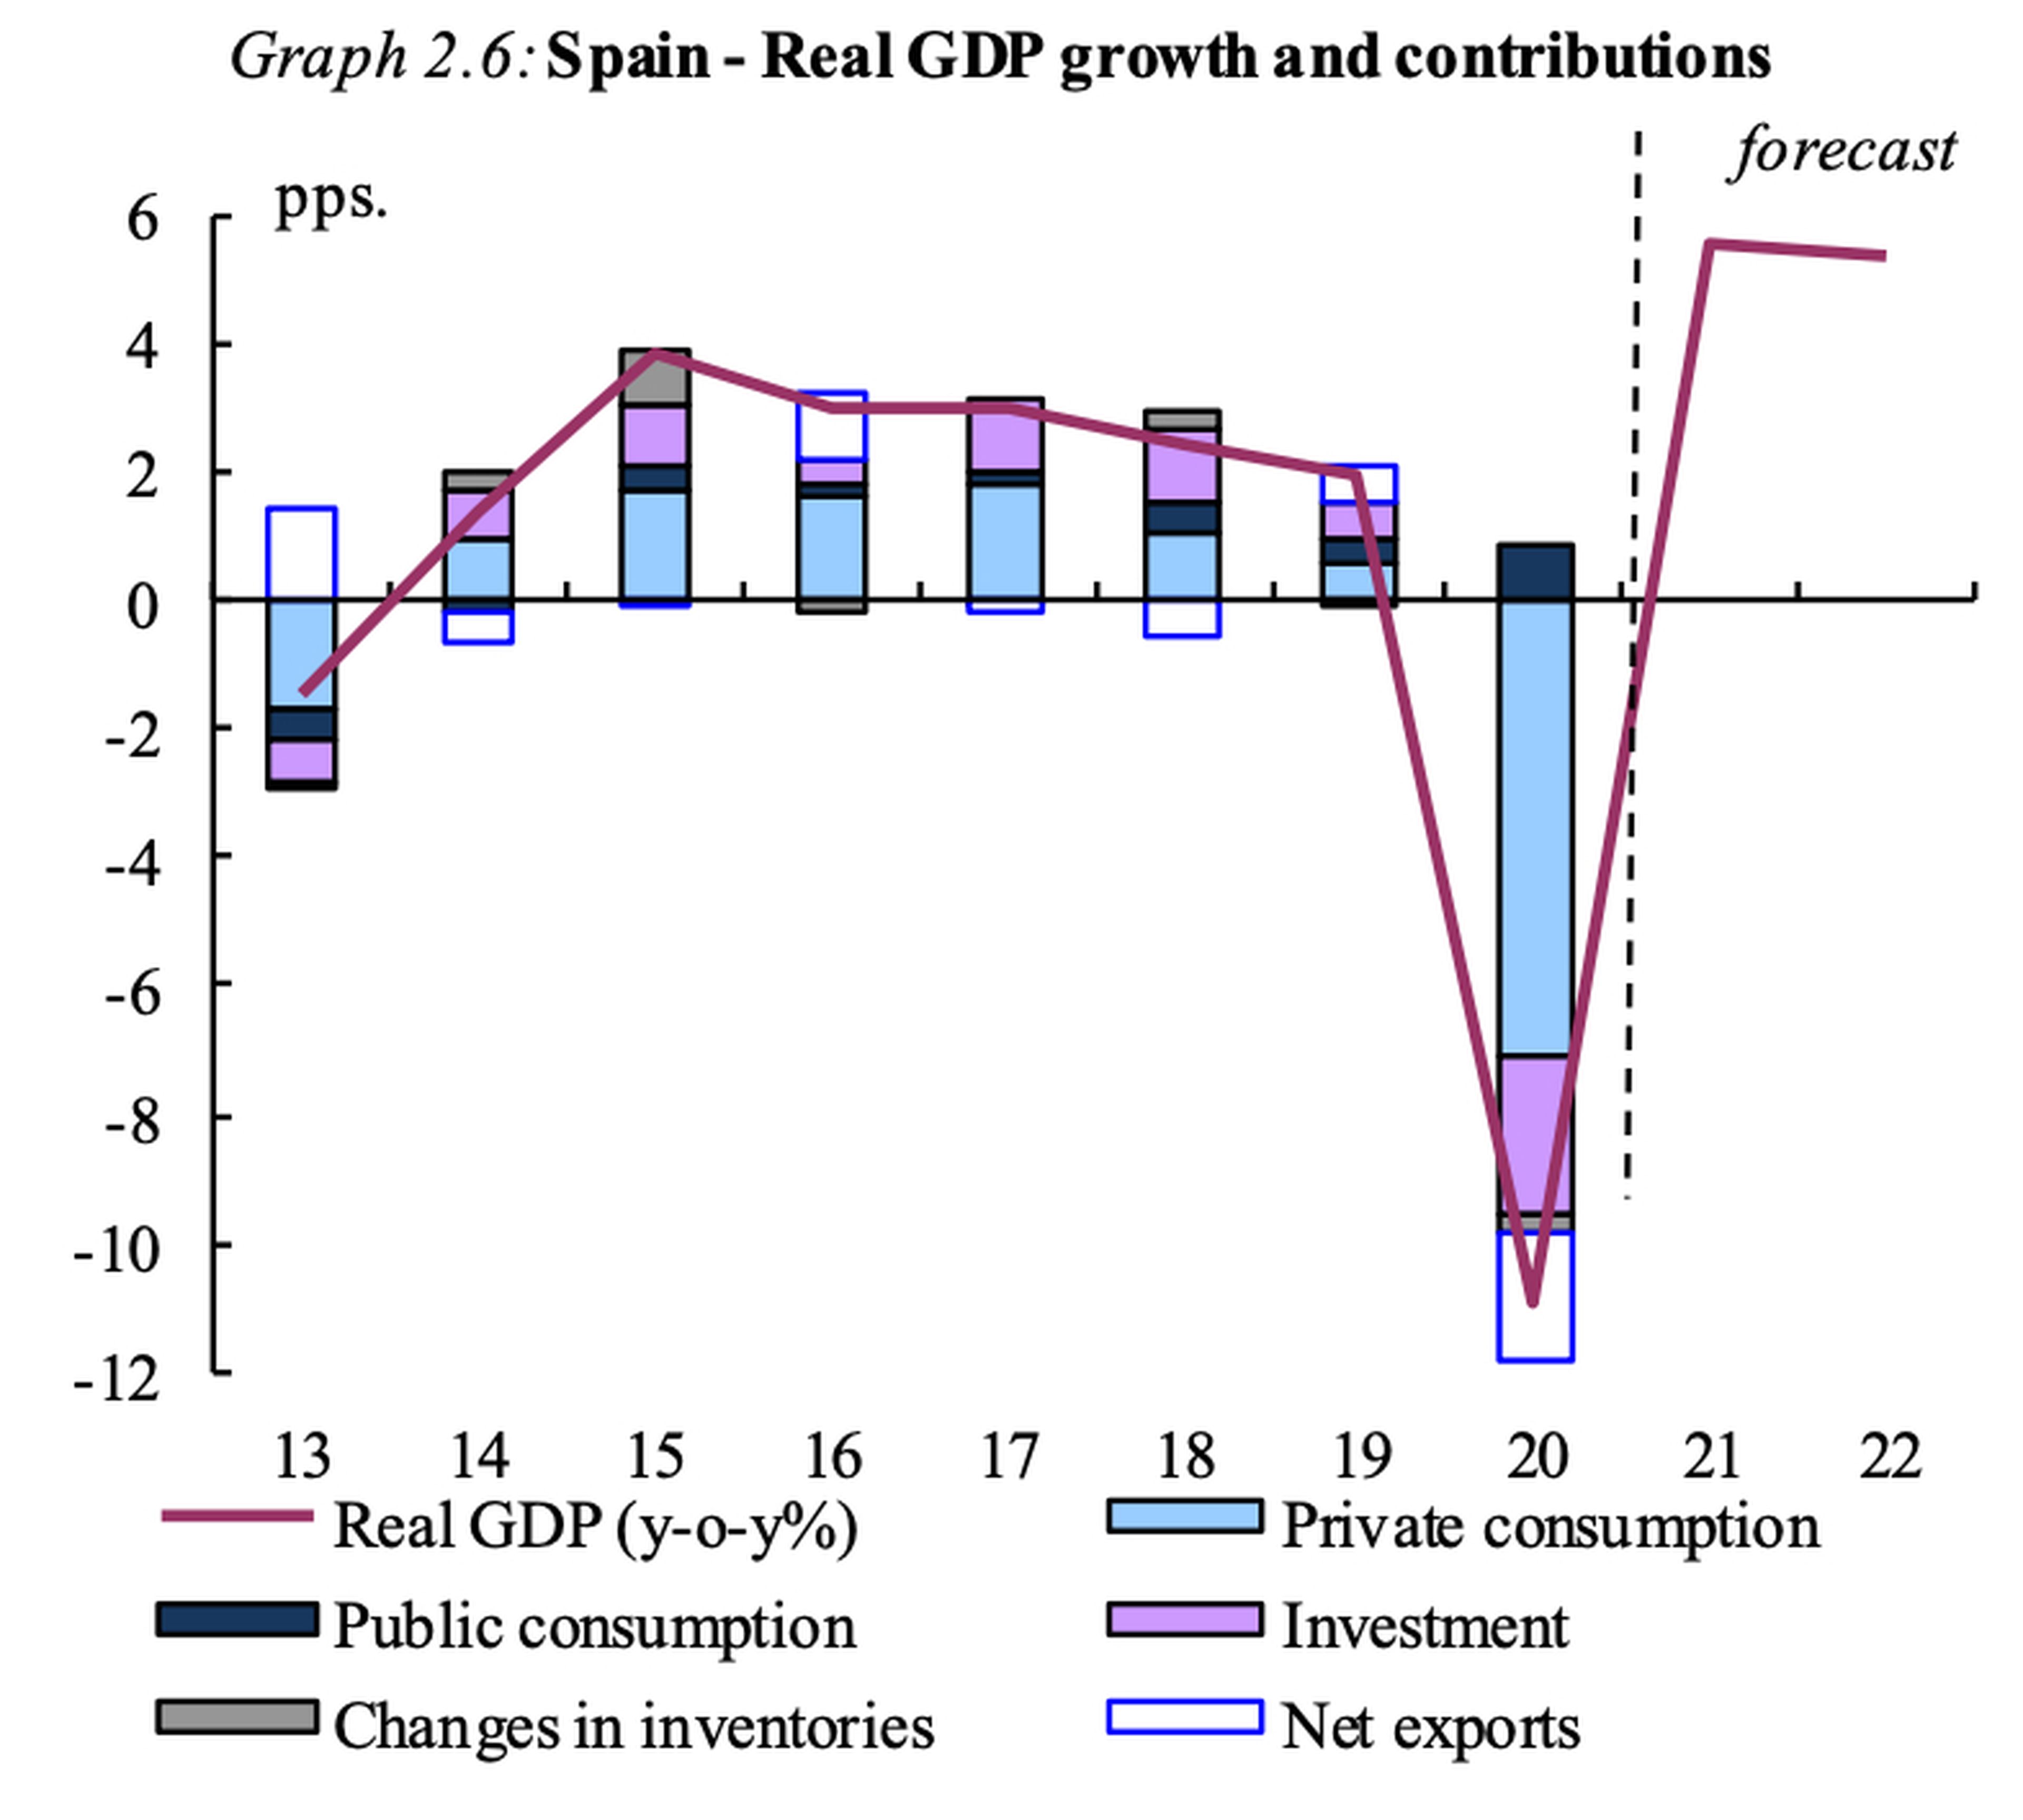 Previsiones de la Comisión Europea para la evolución del PIB, el consumo, la inversión, los invntarios y las exportaciones